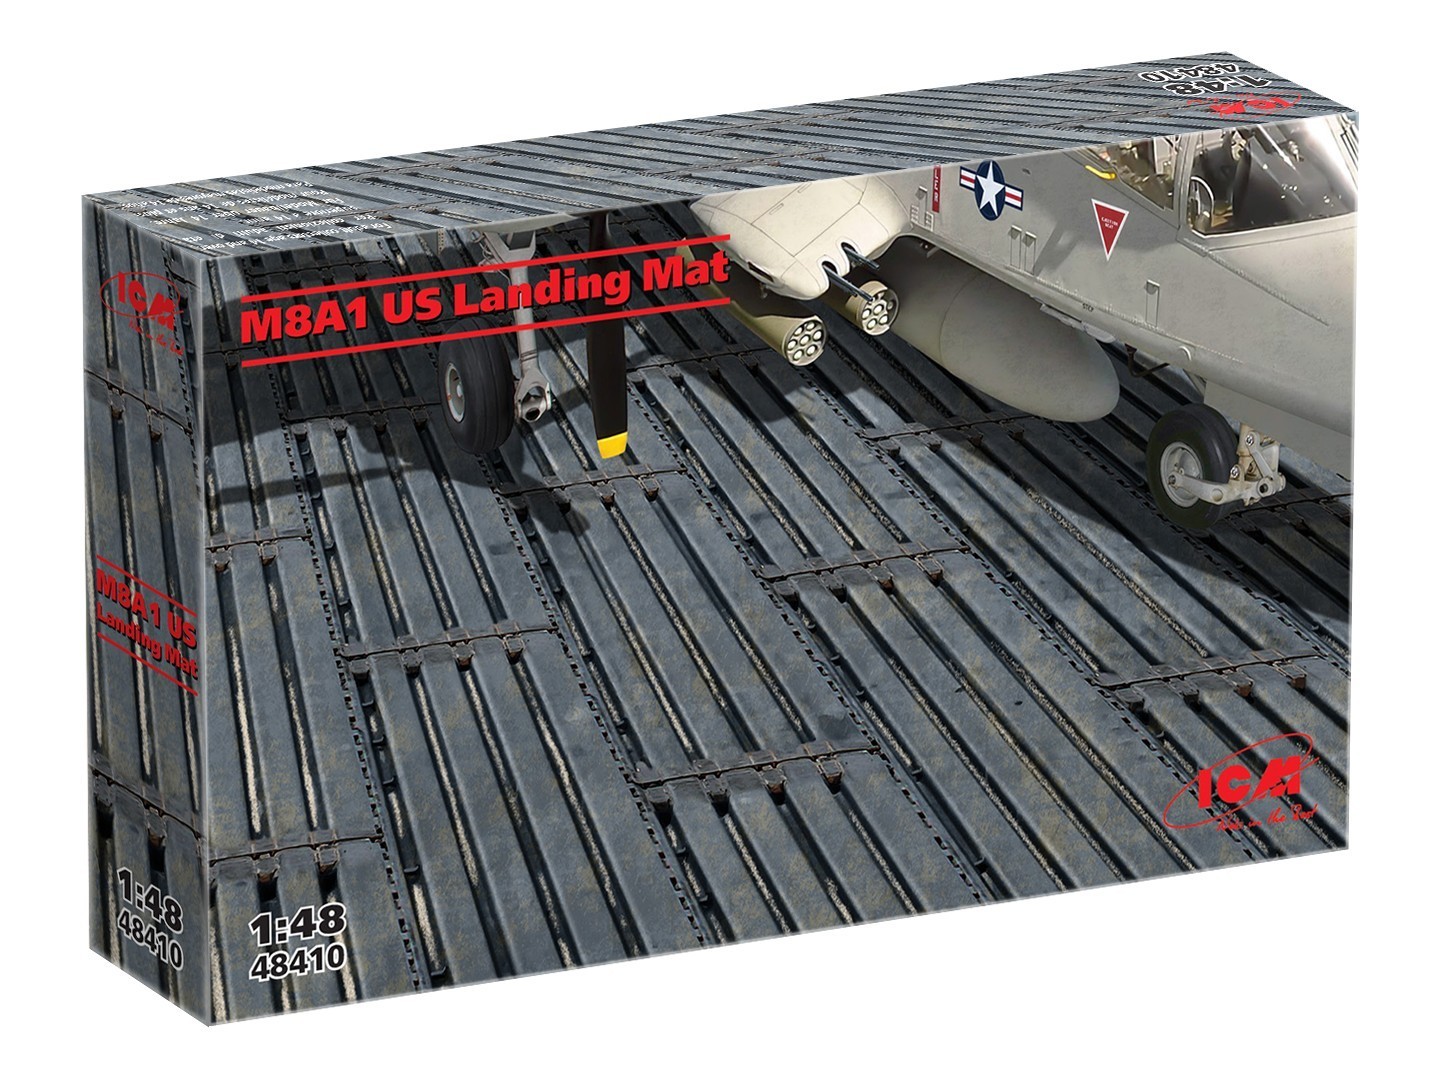 M8A1 US Landing Mat